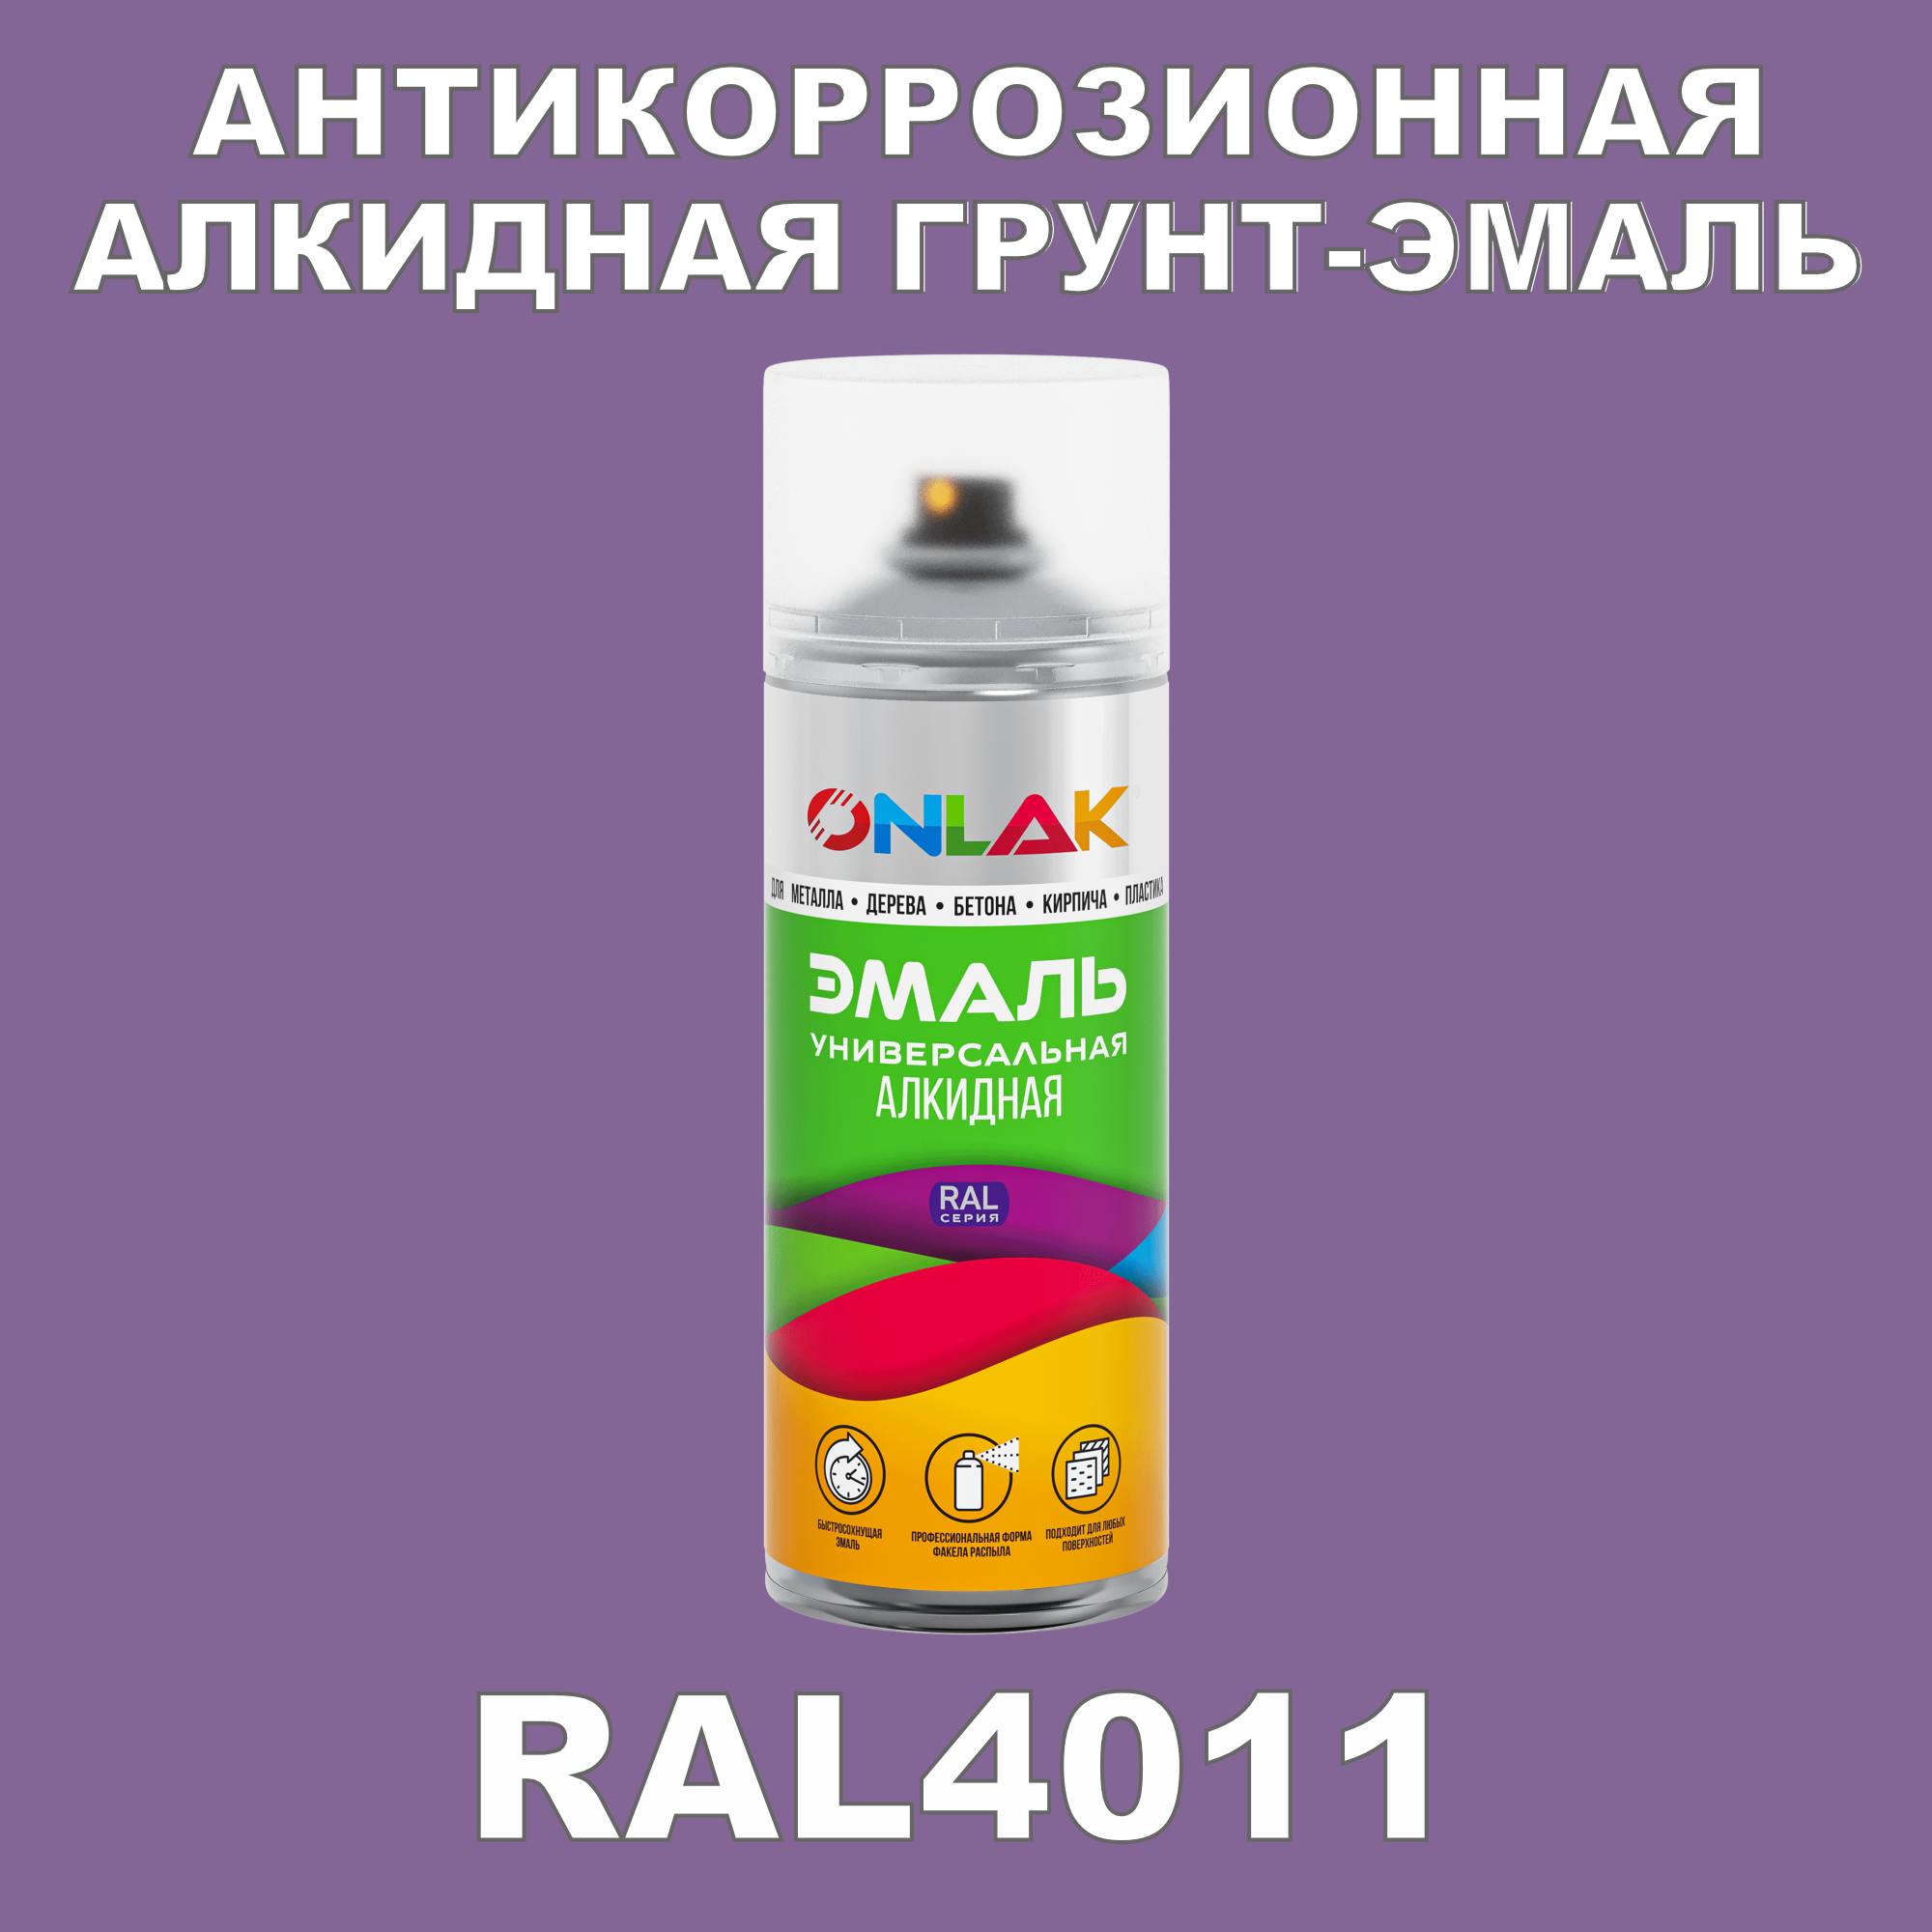 Антикоррозионная грунт-эмаль ONLAK RAL4011 полуматовая для металла и защиты от ржавчины